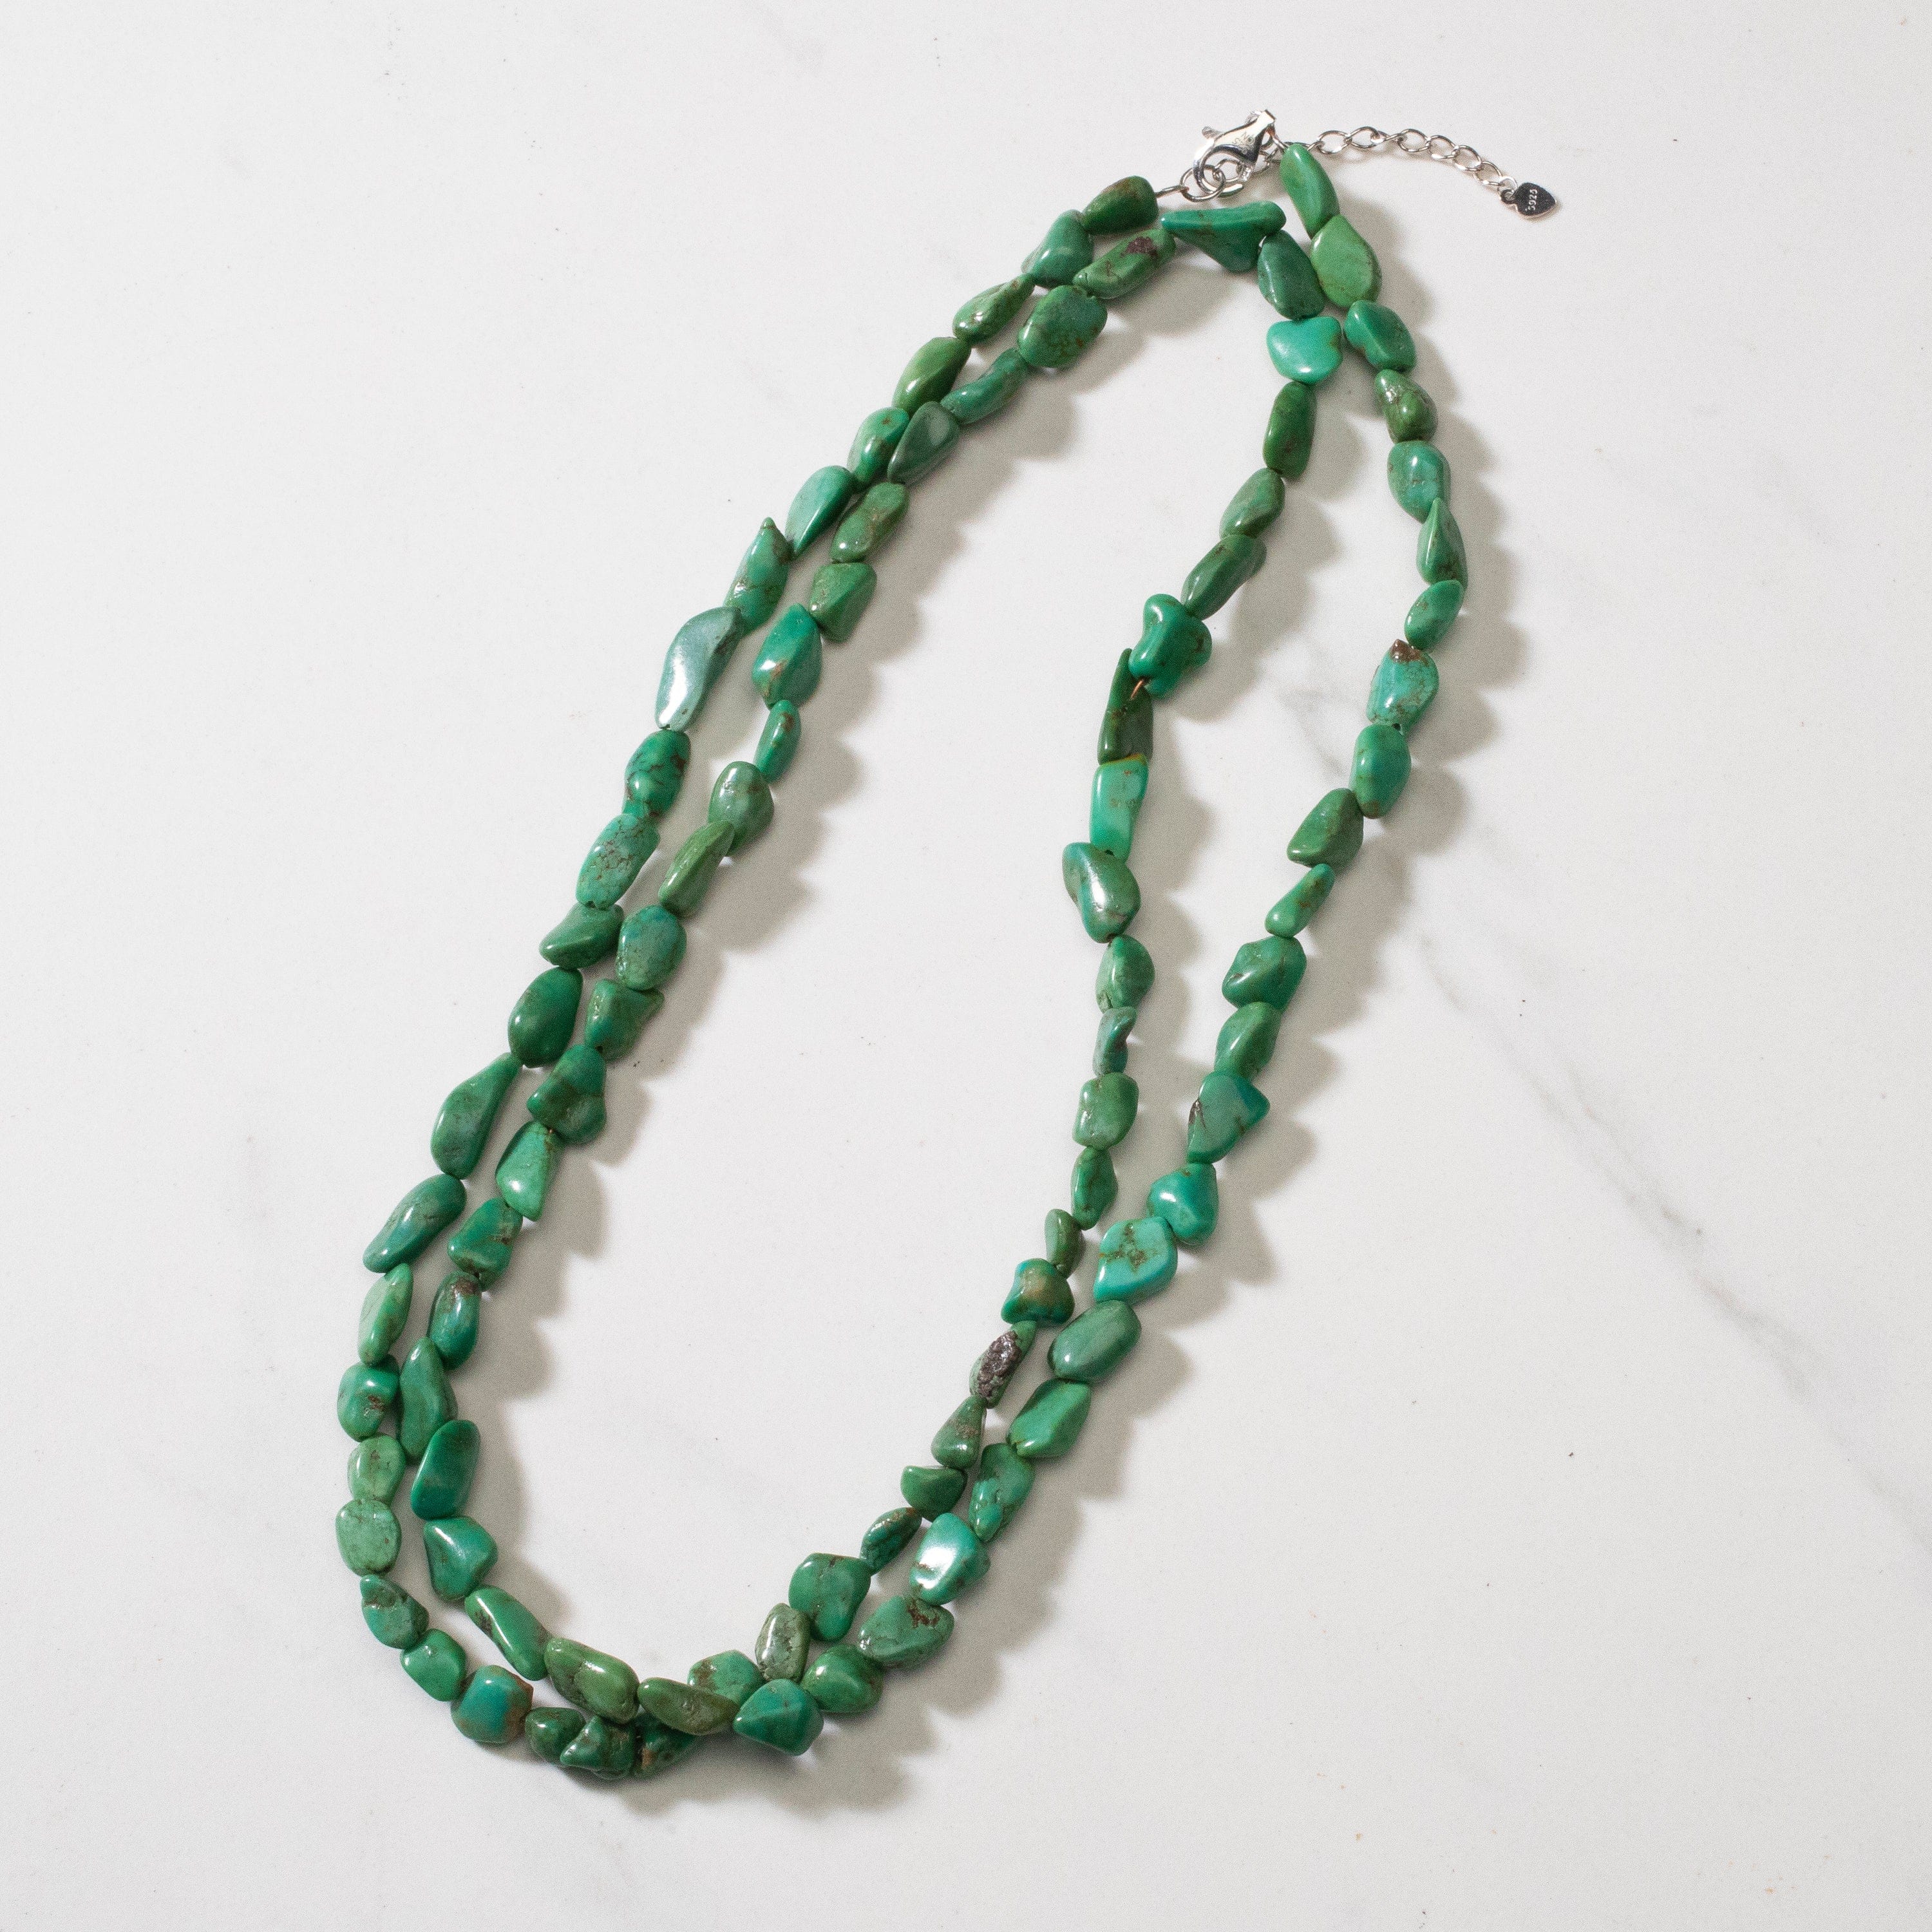 Kalifano Jewelry Anhui Turquoise Beaded Necklace - 36" NECK002